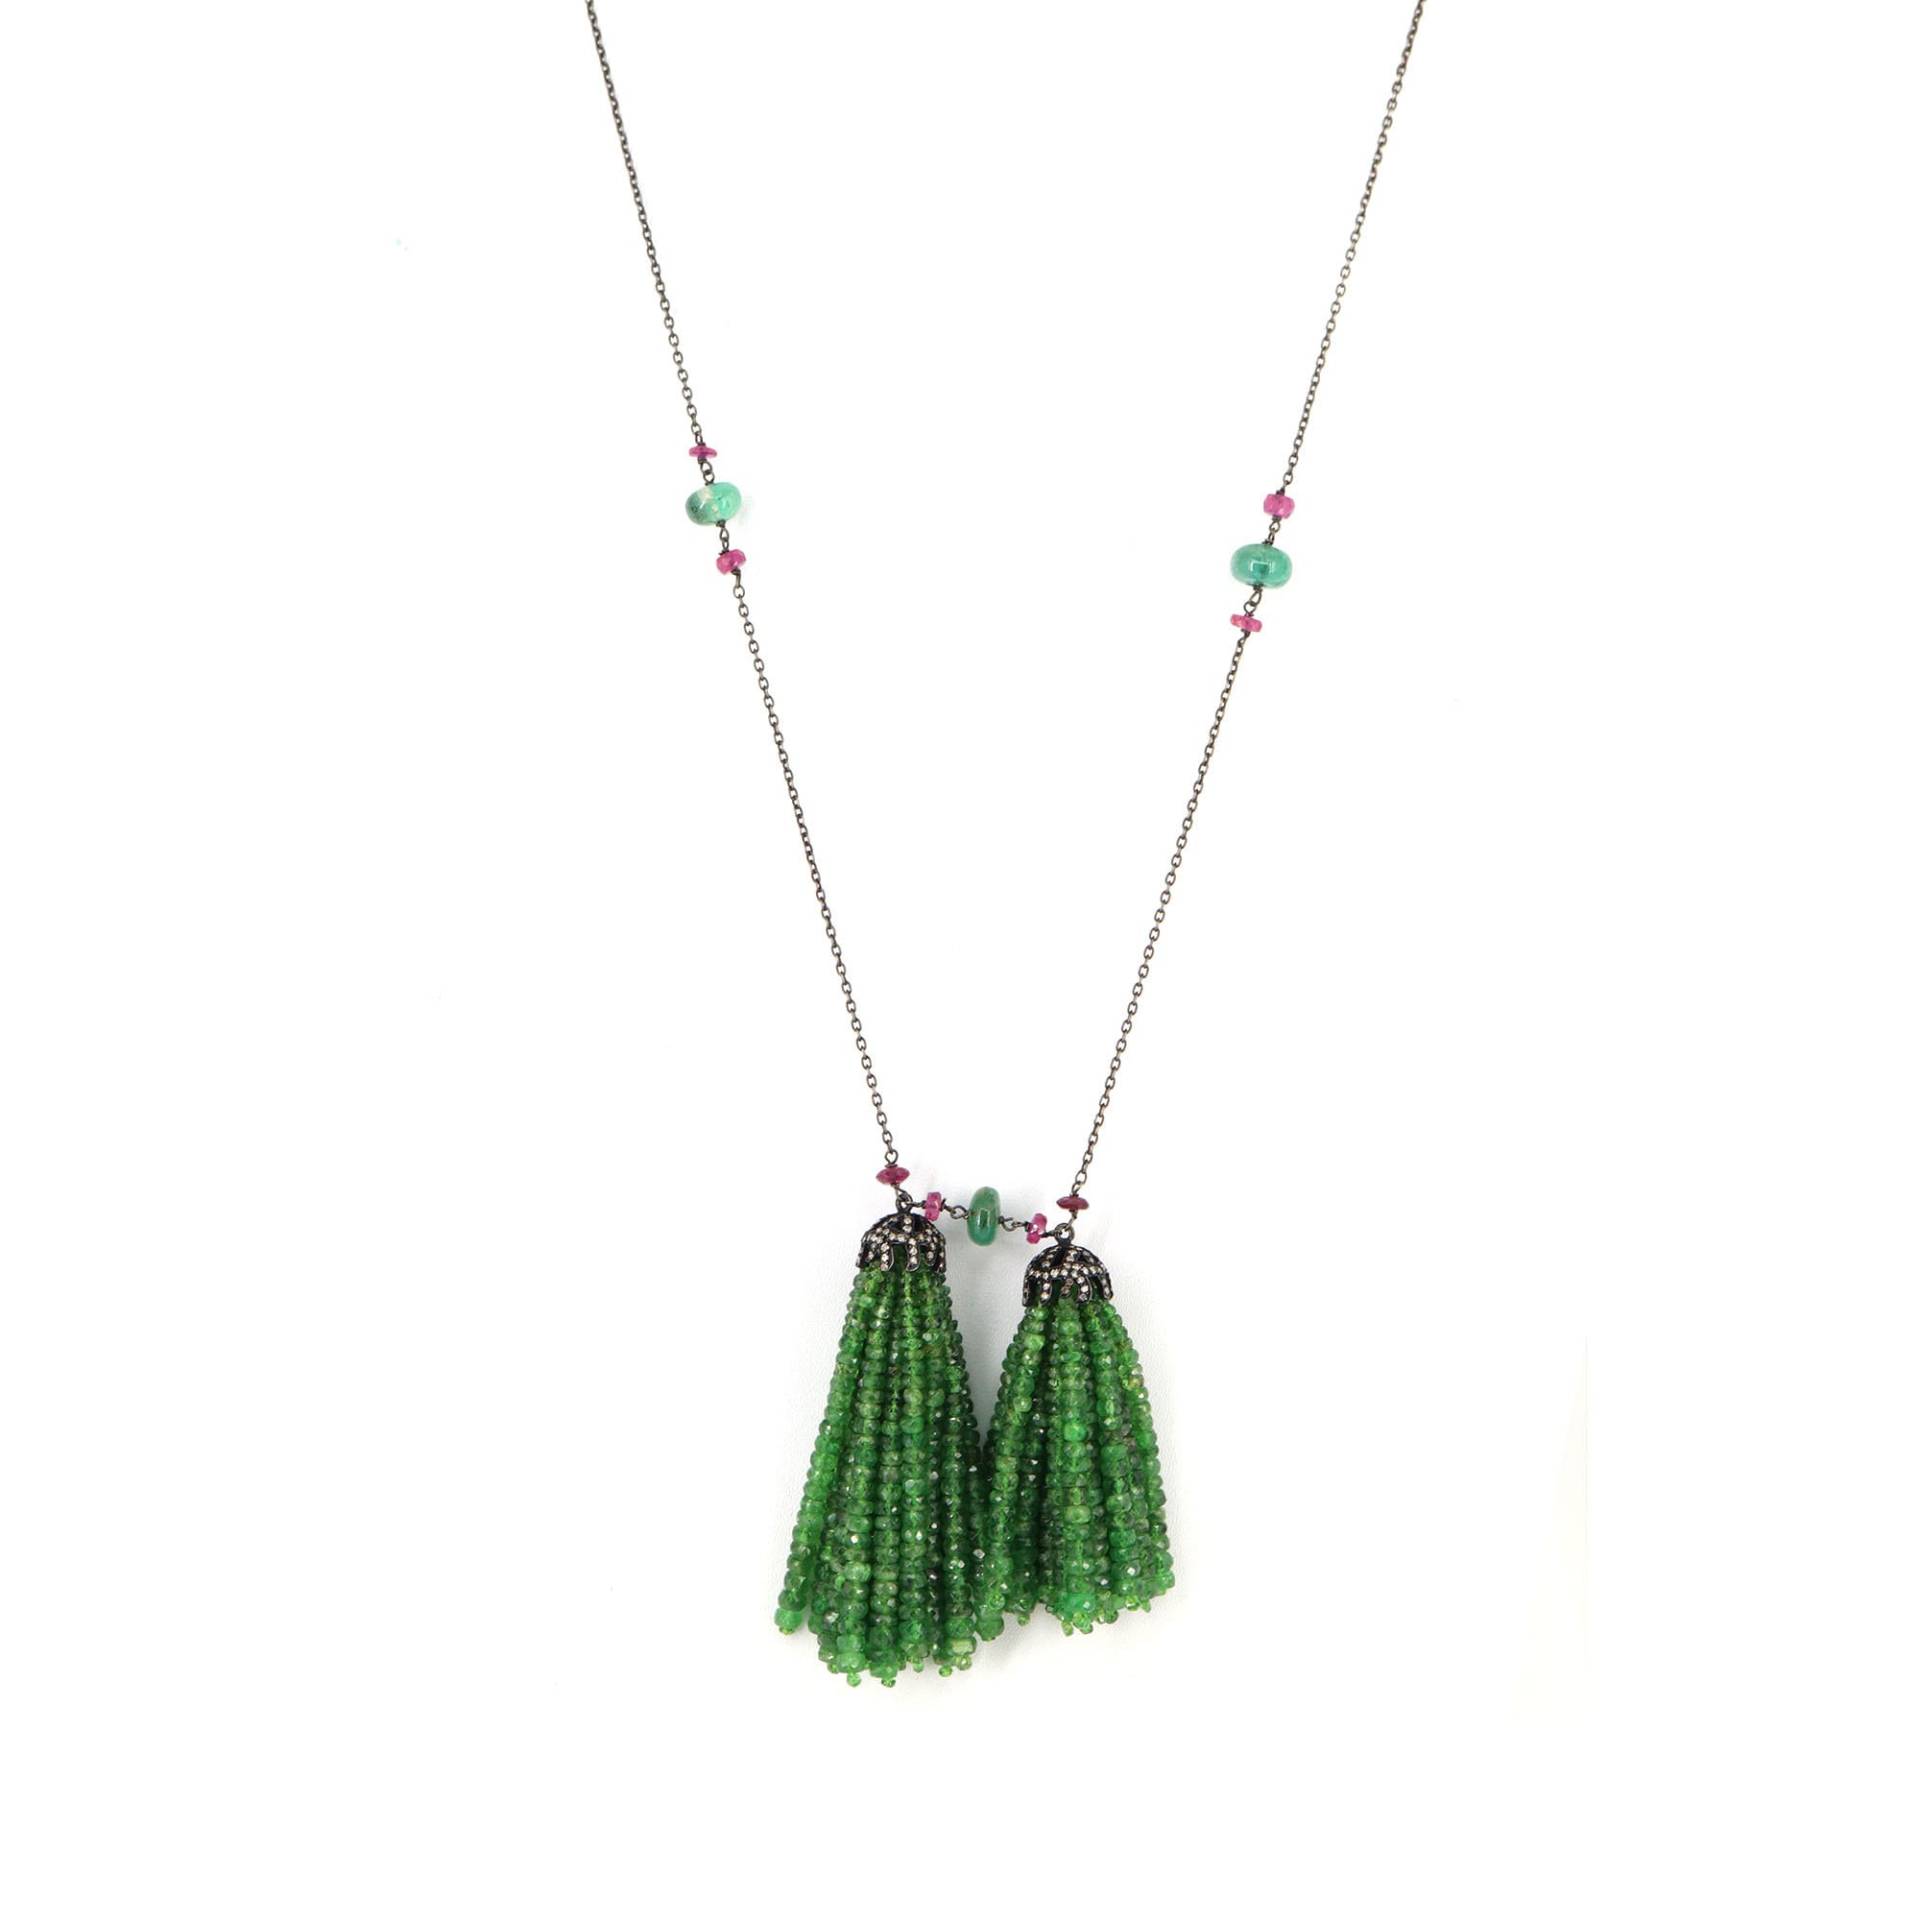 Handgefertigte Tassel Smaragd Halskette, Diamant Tsavorit Rubin Blau Saphir Multi Edelstein Halskette von Shubhkrishnajewels